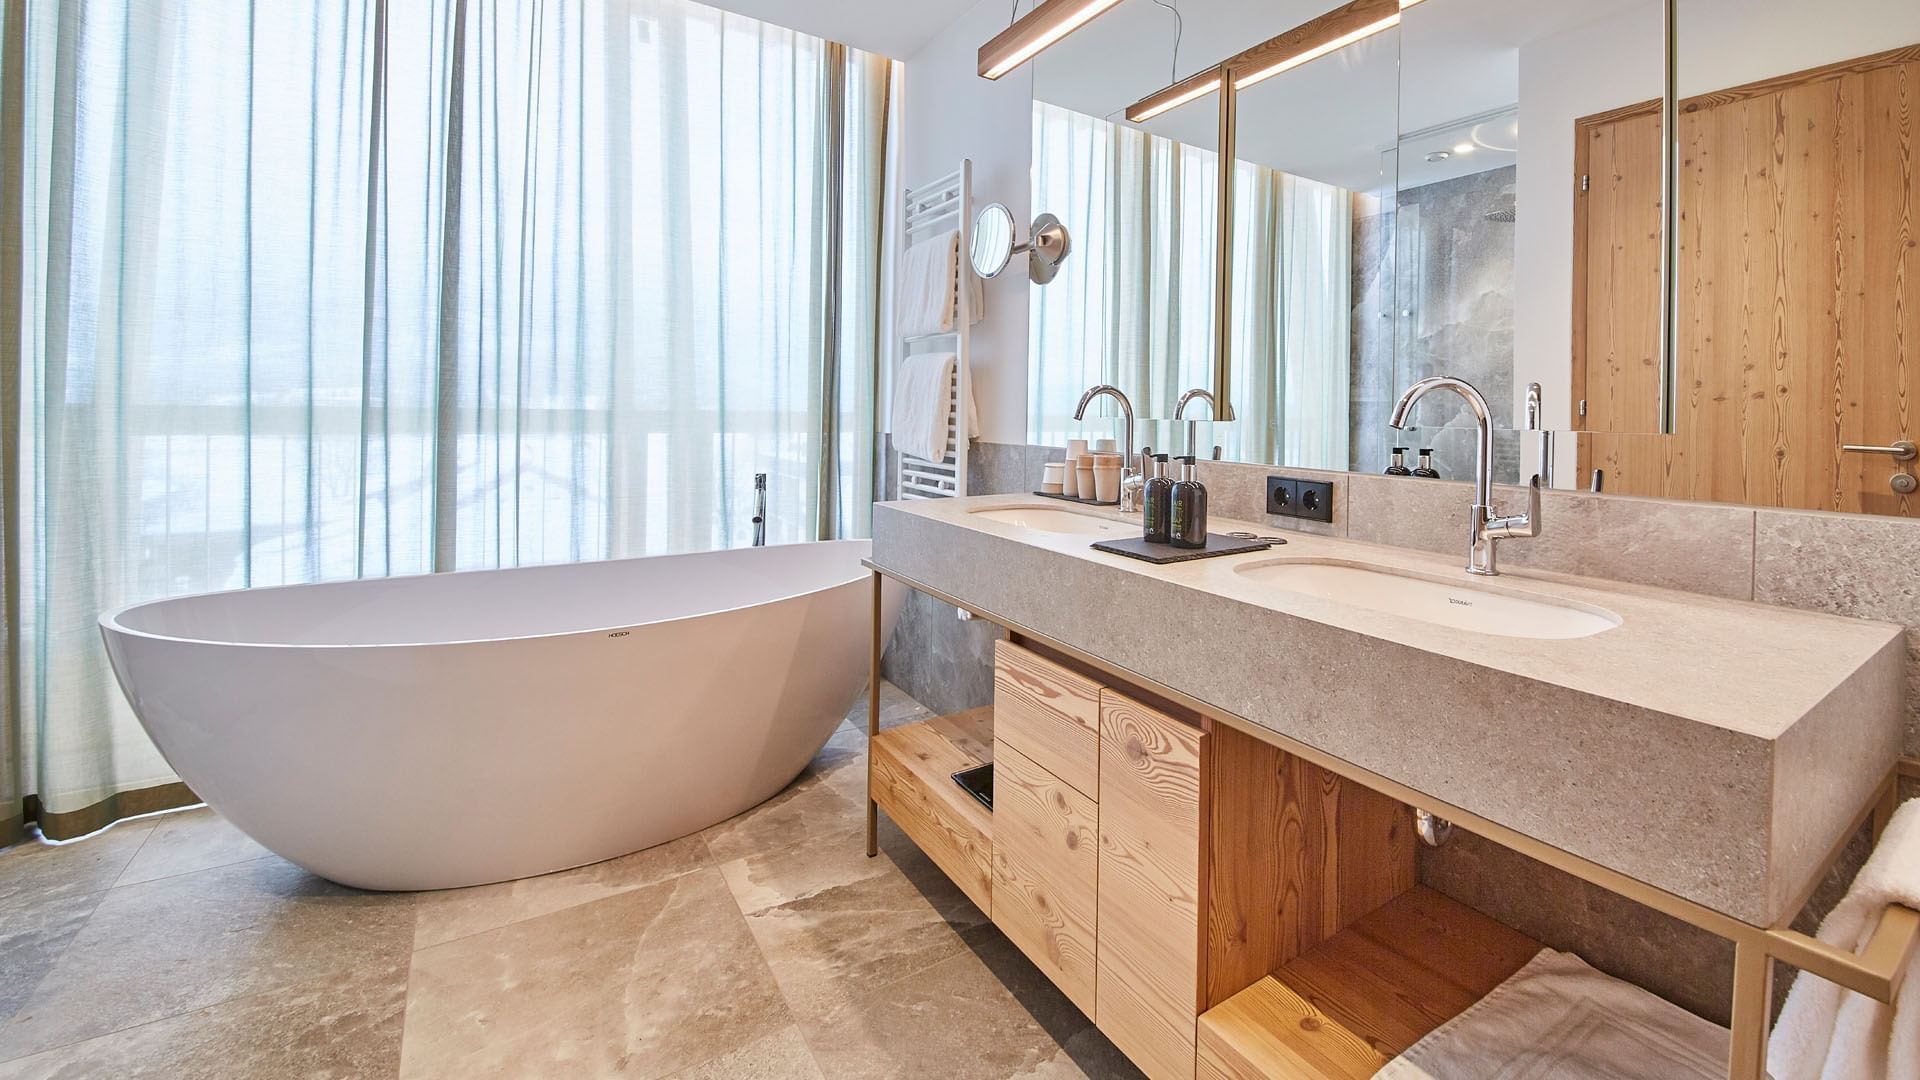 Bathroom vanity & tub in Summit Suite at Falkensteiner Hotels